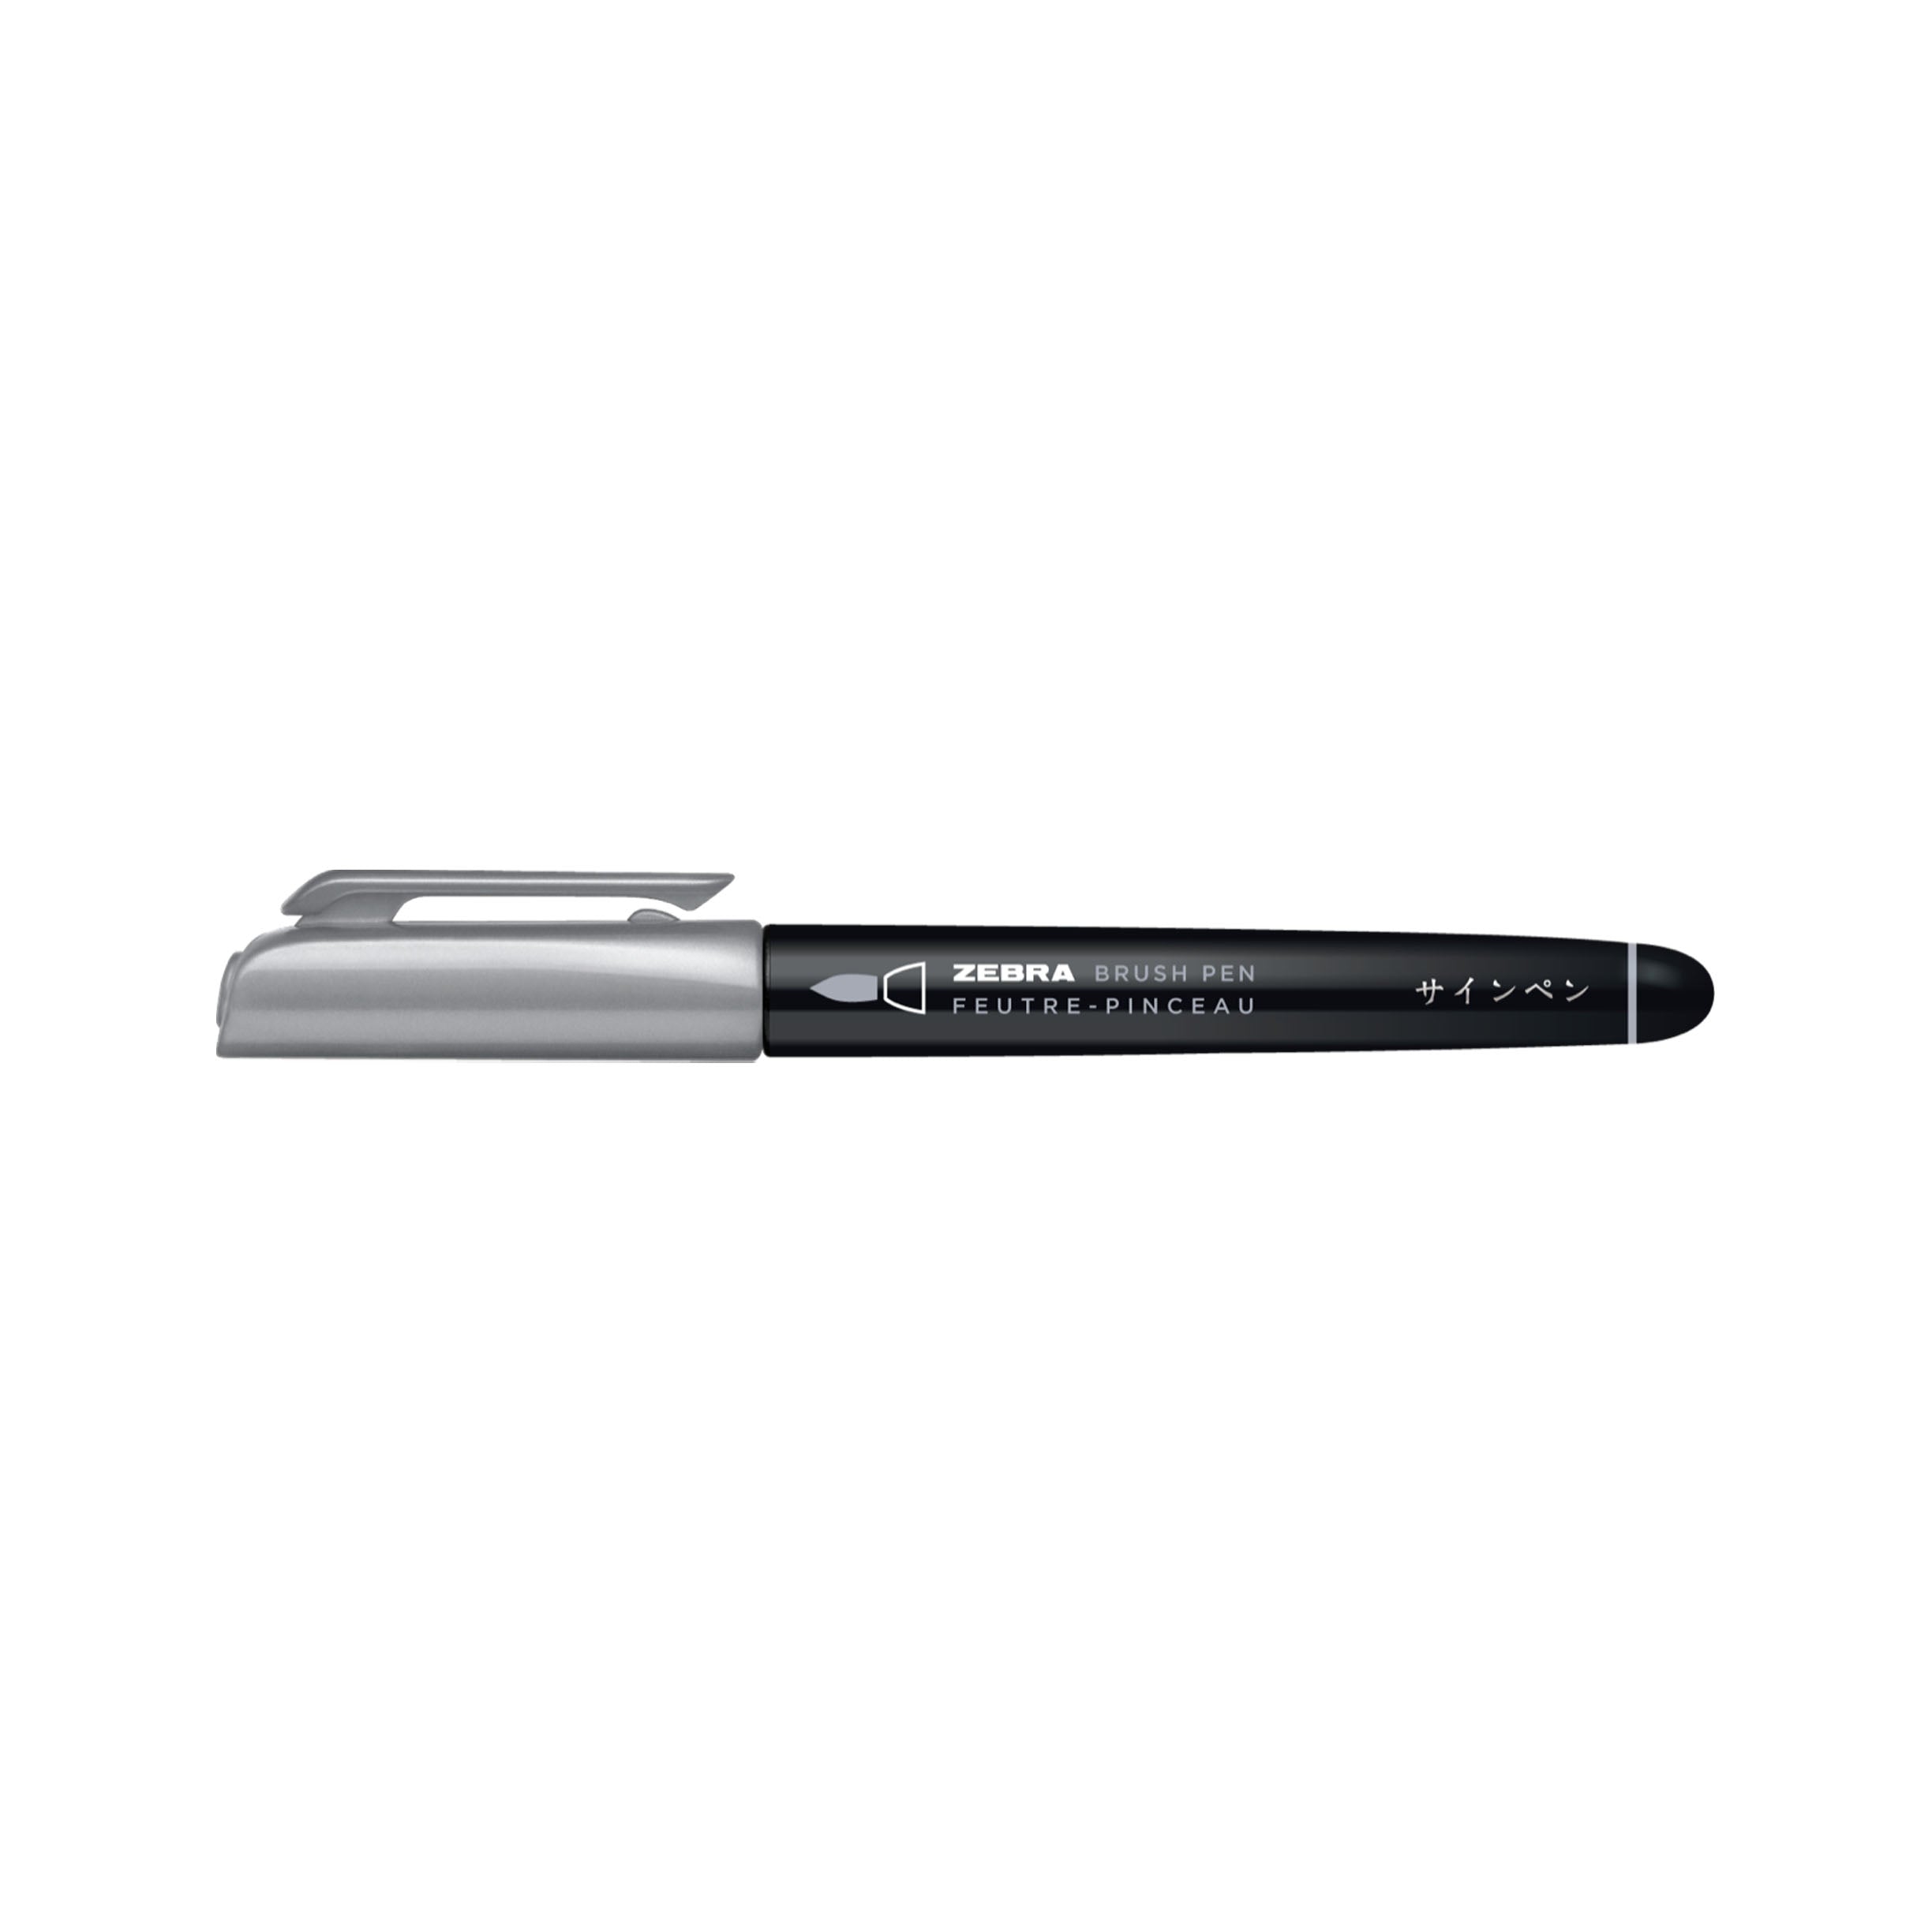 Zebra Metallic Brush Pen - Silver